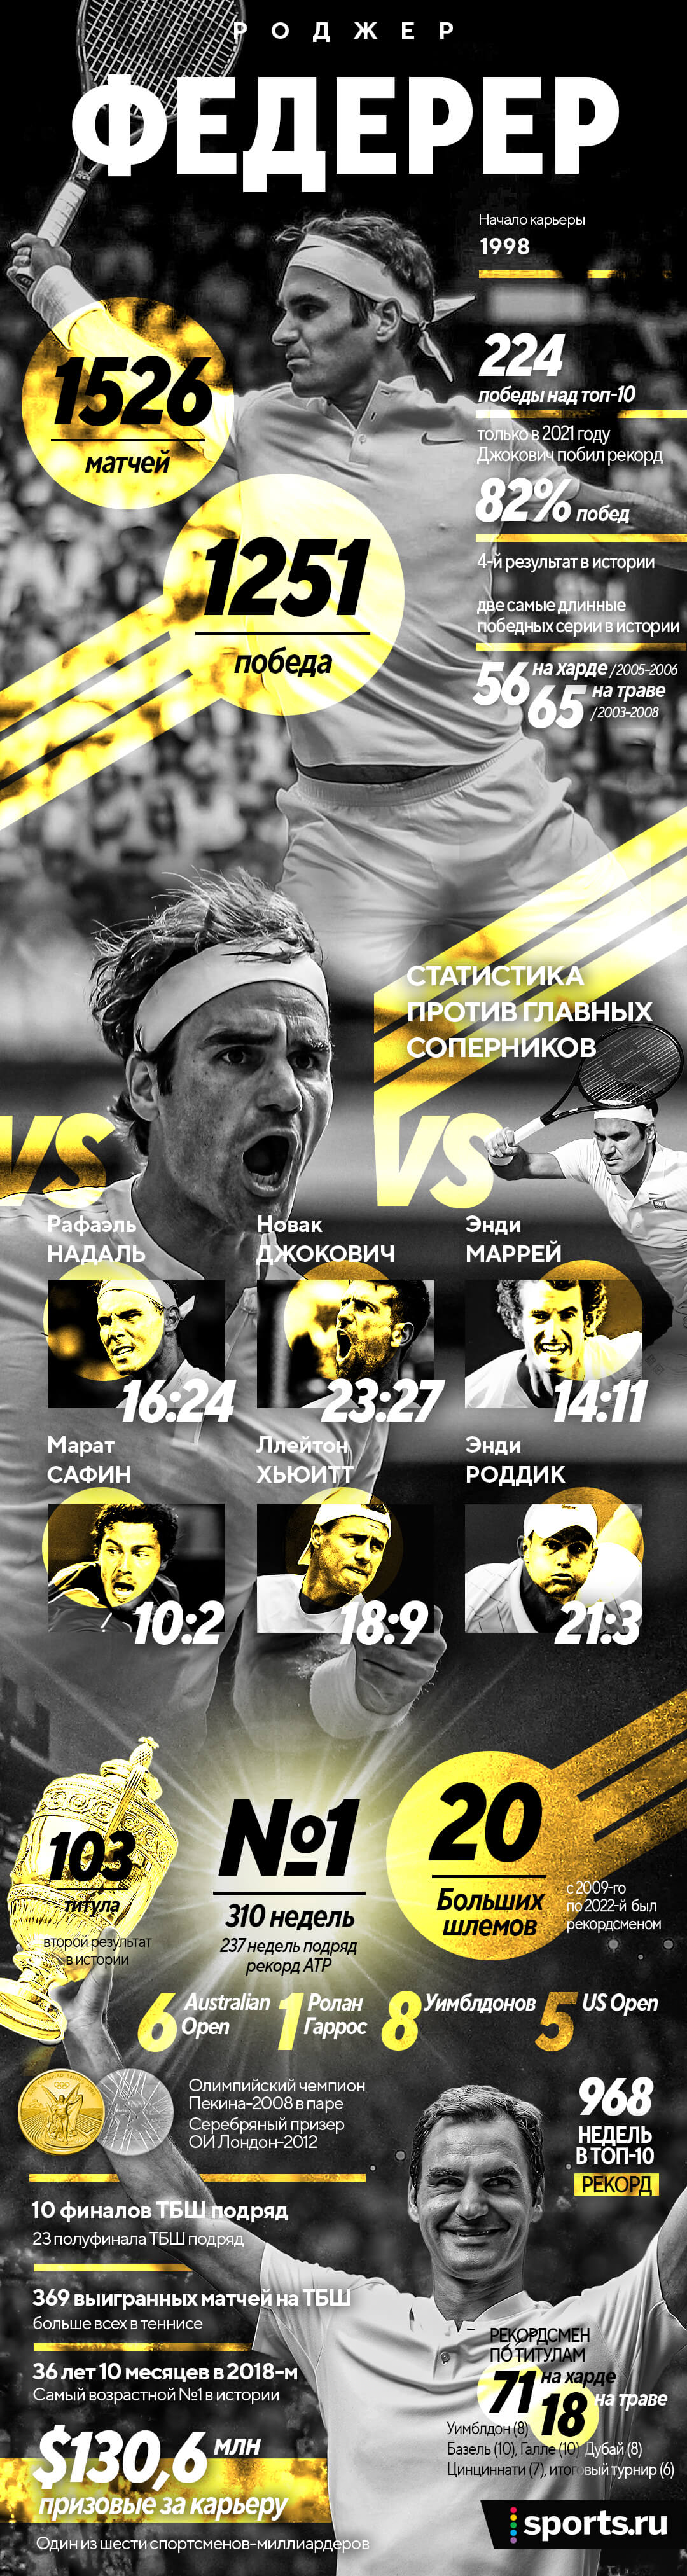 Величие Роджера Федерера на одной картинке: 20 «Больших шлемов», 103 титула и рекорды-рекорды-рекорды